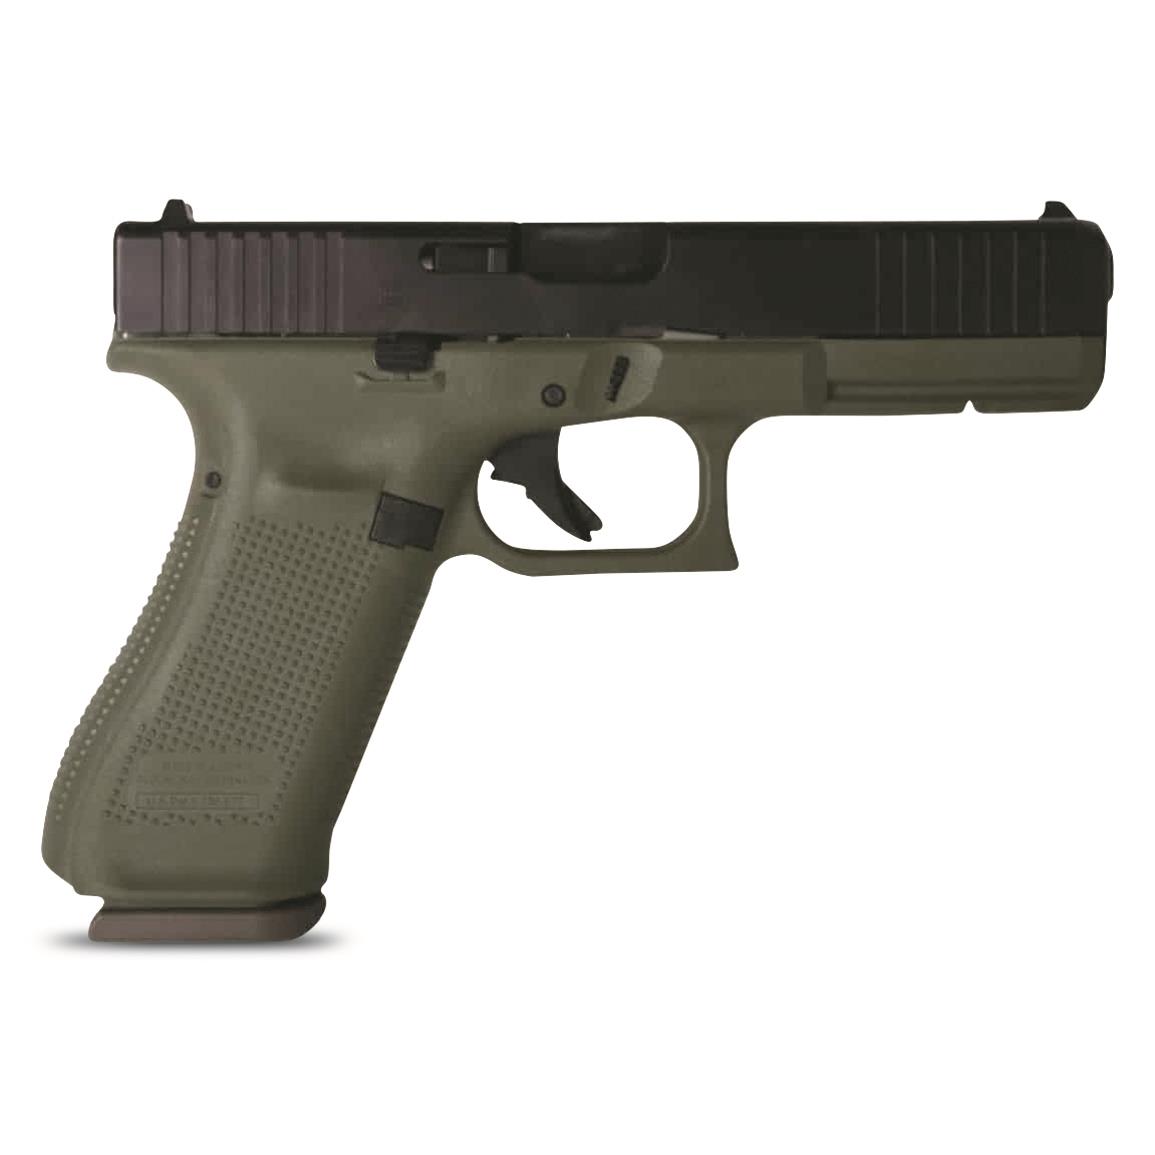 Glock 17 Gen5, Semi-Automatic, 9mm, 4.48" Barrel, Battlefield Green, 17+1 Rounds